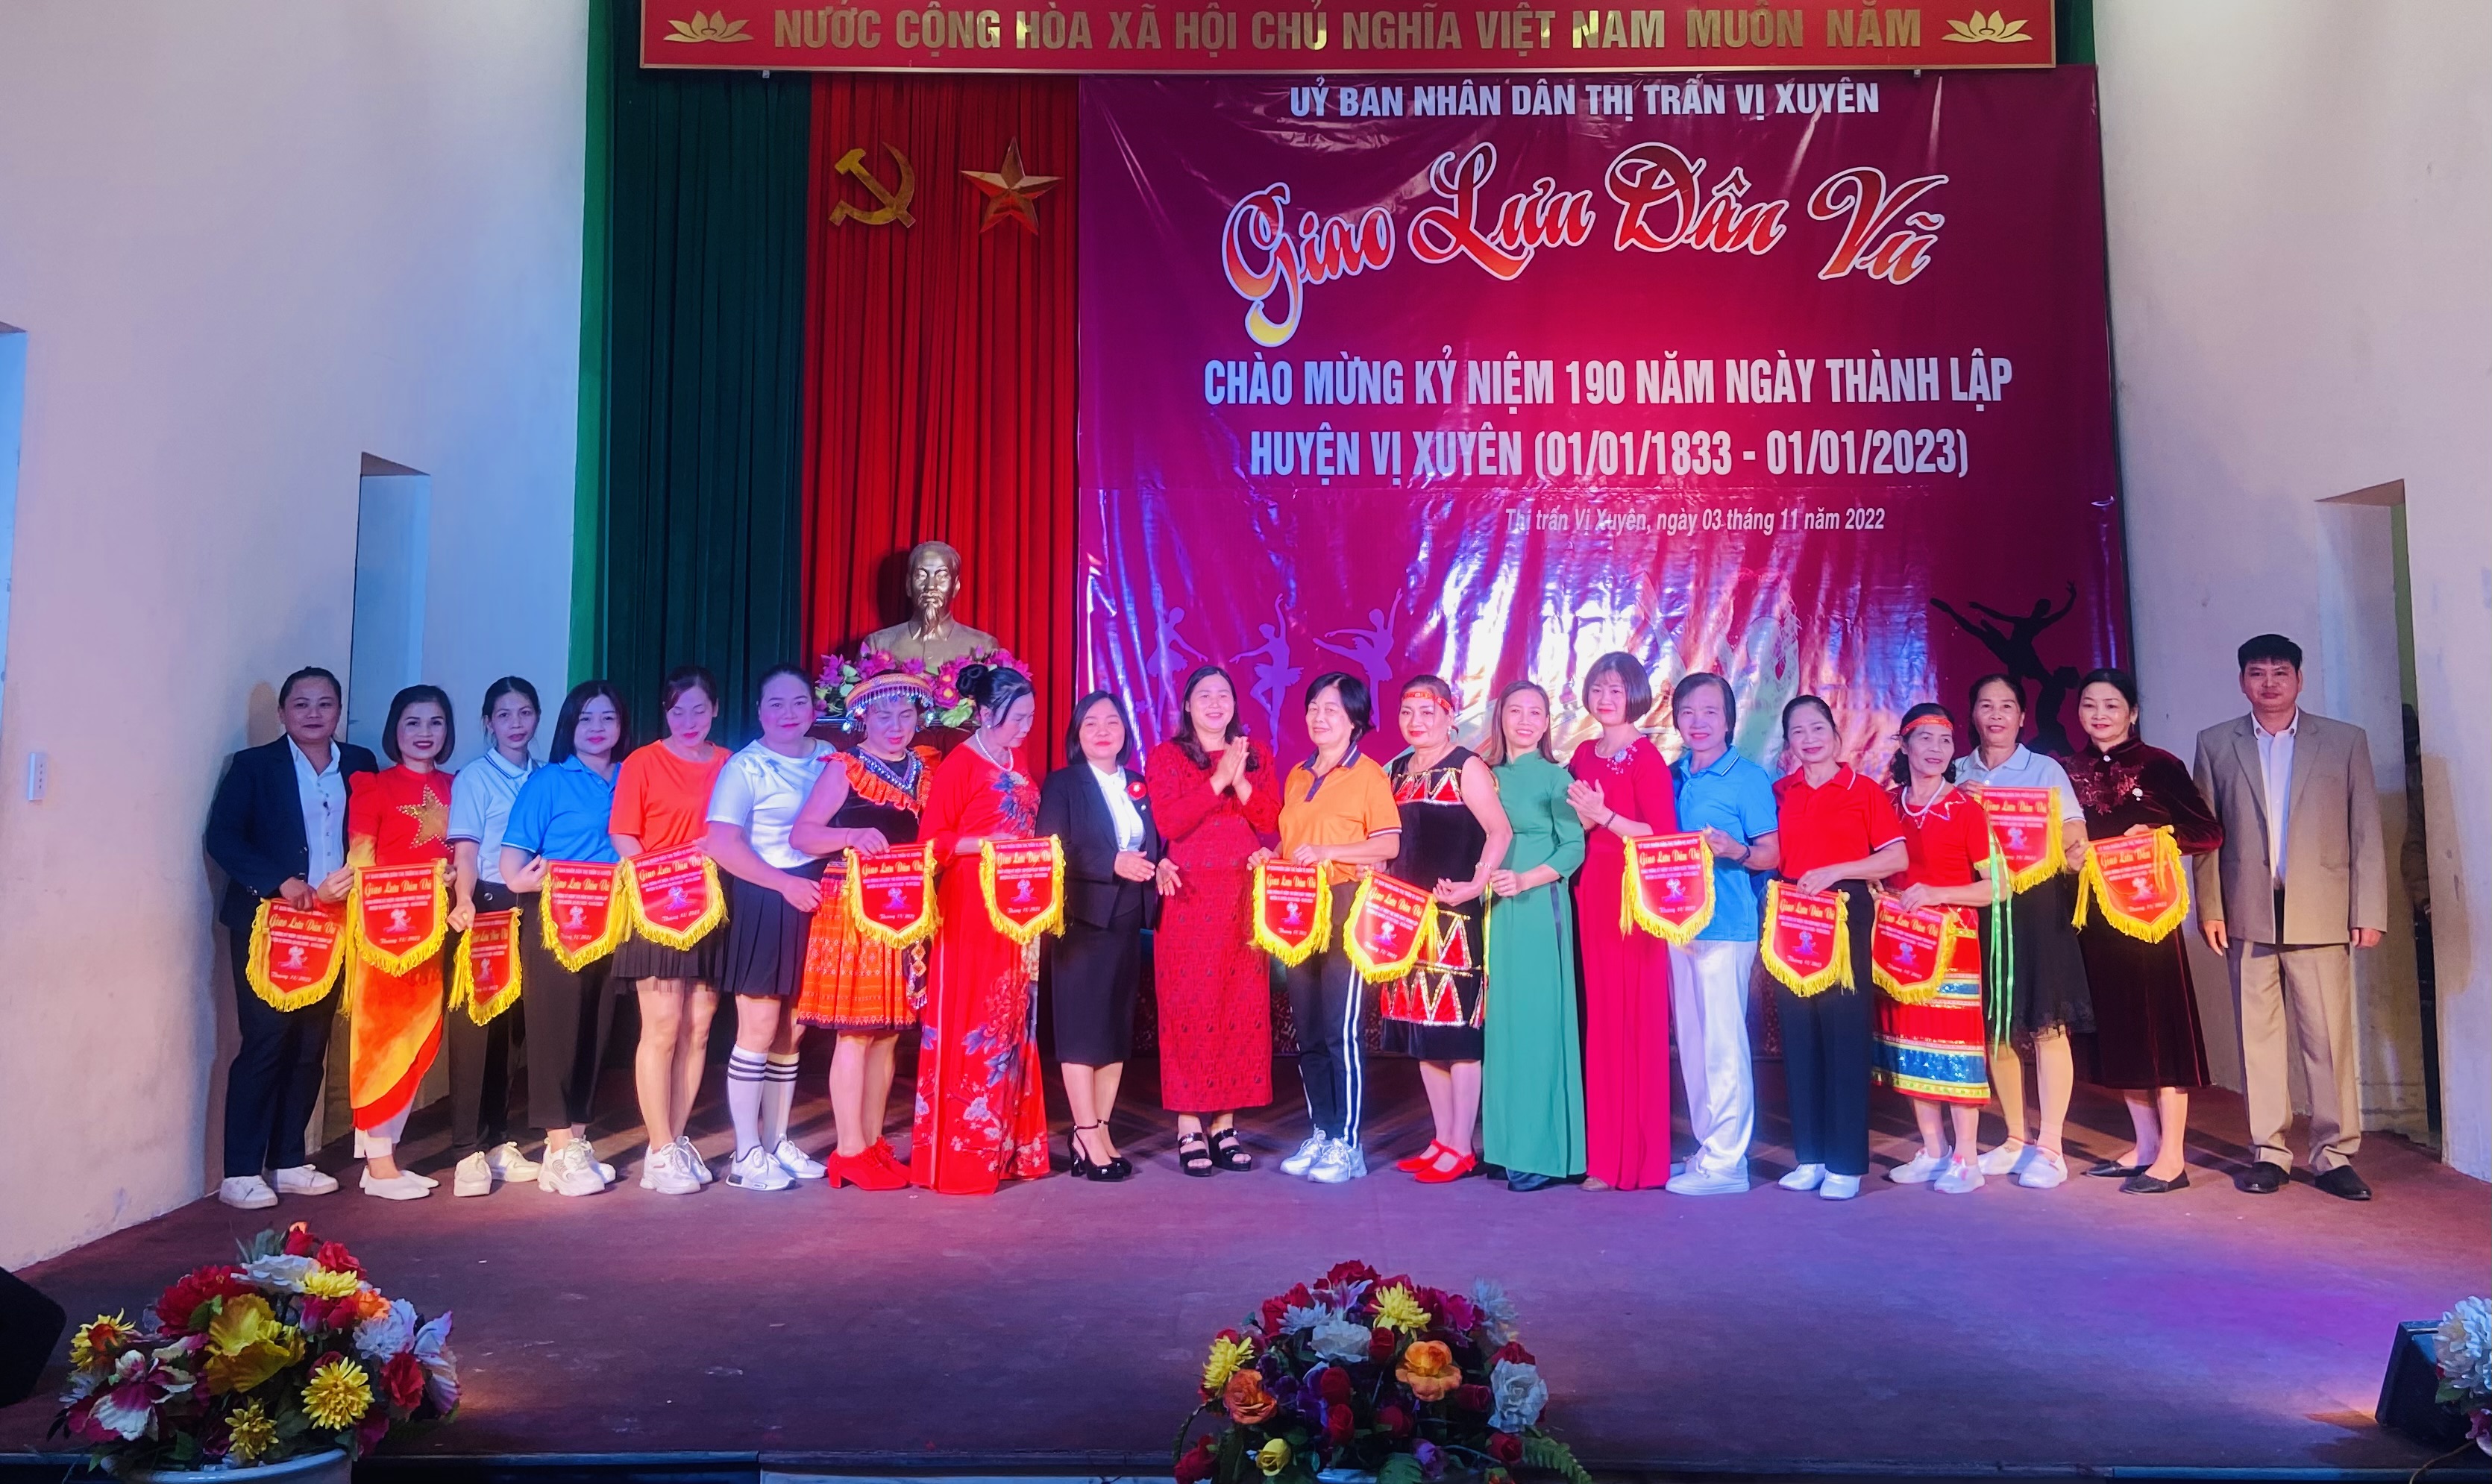 Thị trấn Vị Xuyên tổ chức đêm Giao lưu Dân vũ chào mừng kỷ niệm 190 năm ngày thành lập huyện